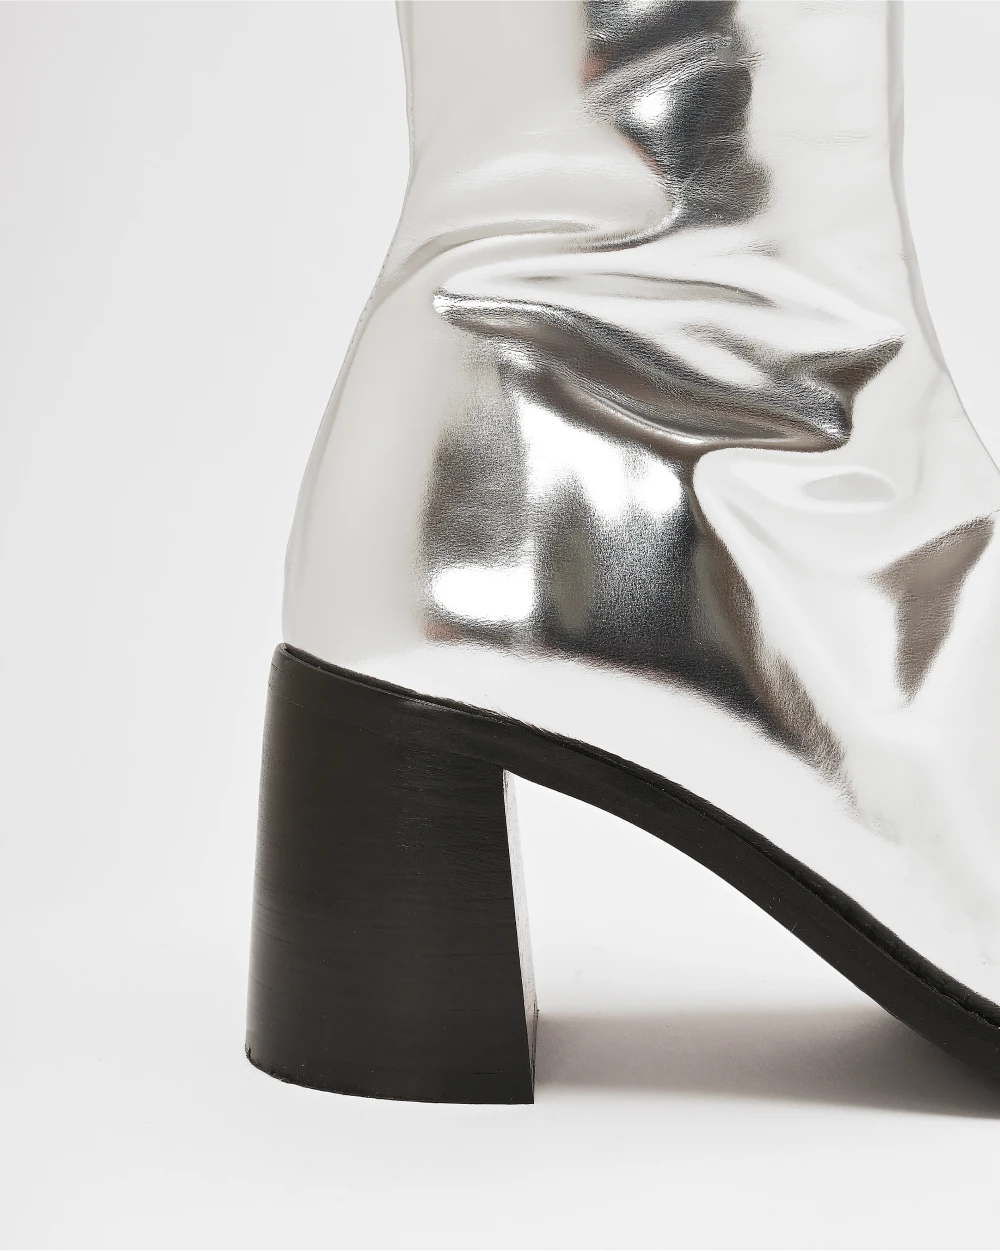 Les bottes CRISTOBAL à talon en cuir upcyclé argent métallisé, avec un talon large de 7cm pour des bottes élégantes, féminines et confortables